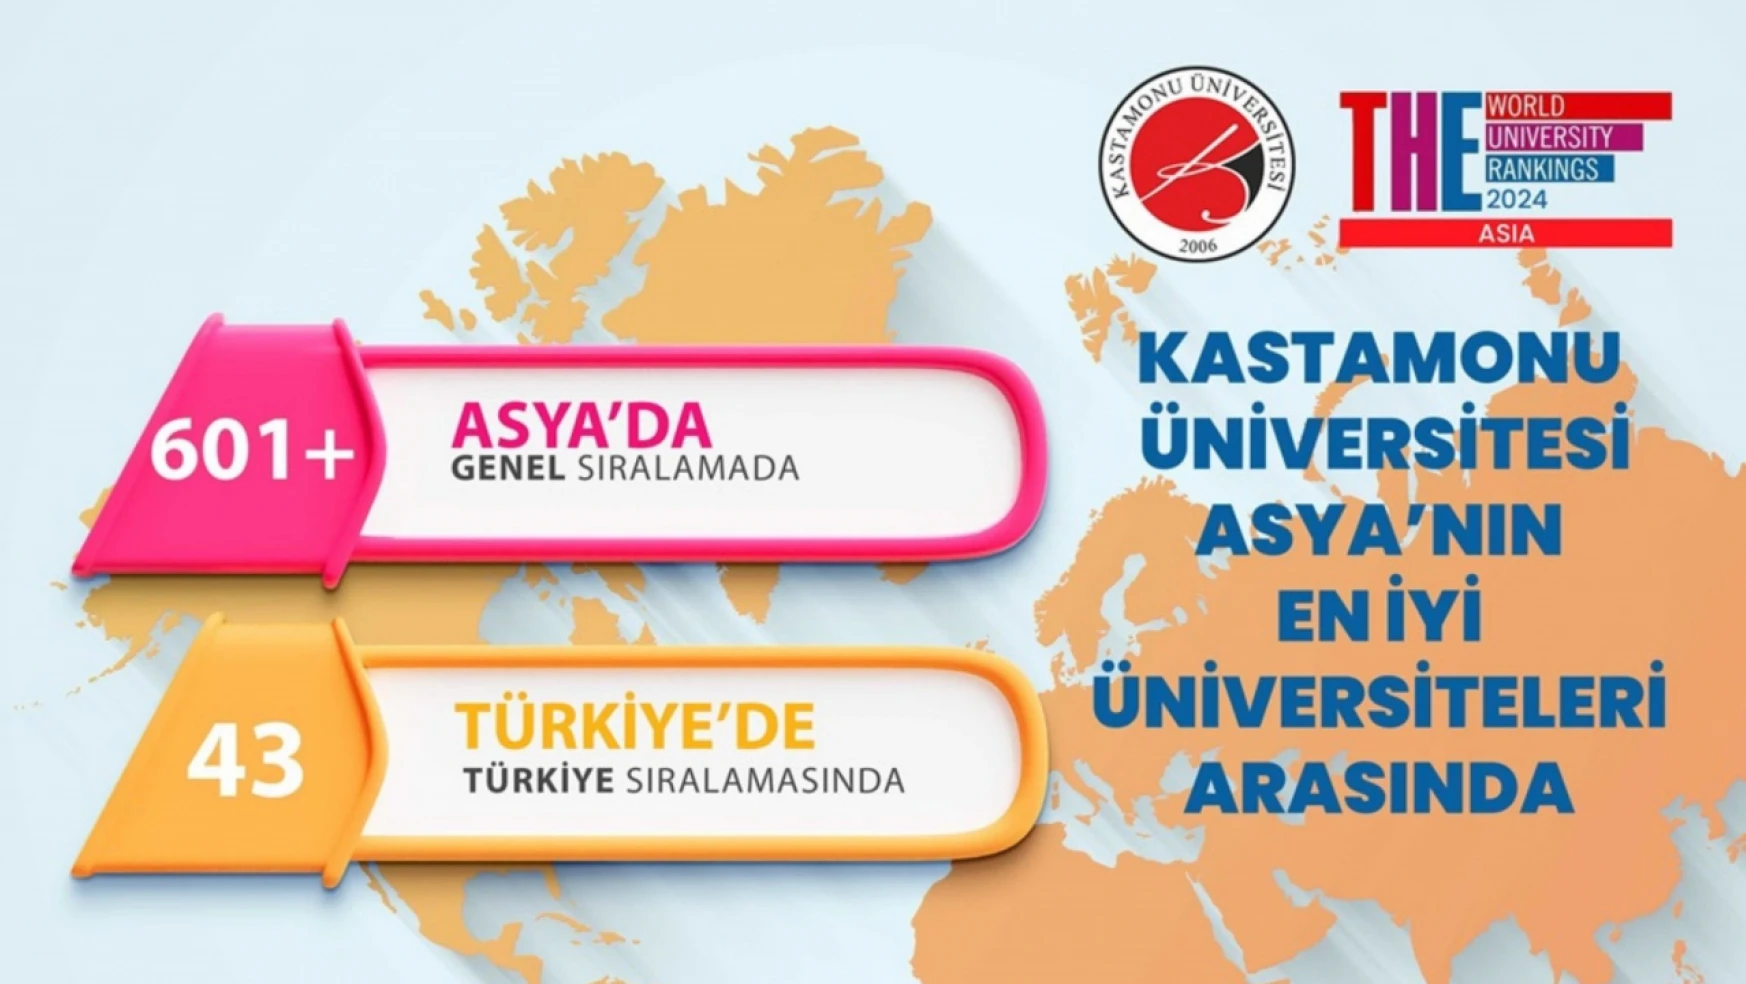 Kastamonu Üniversitesi Asya'nın En İyilerinden